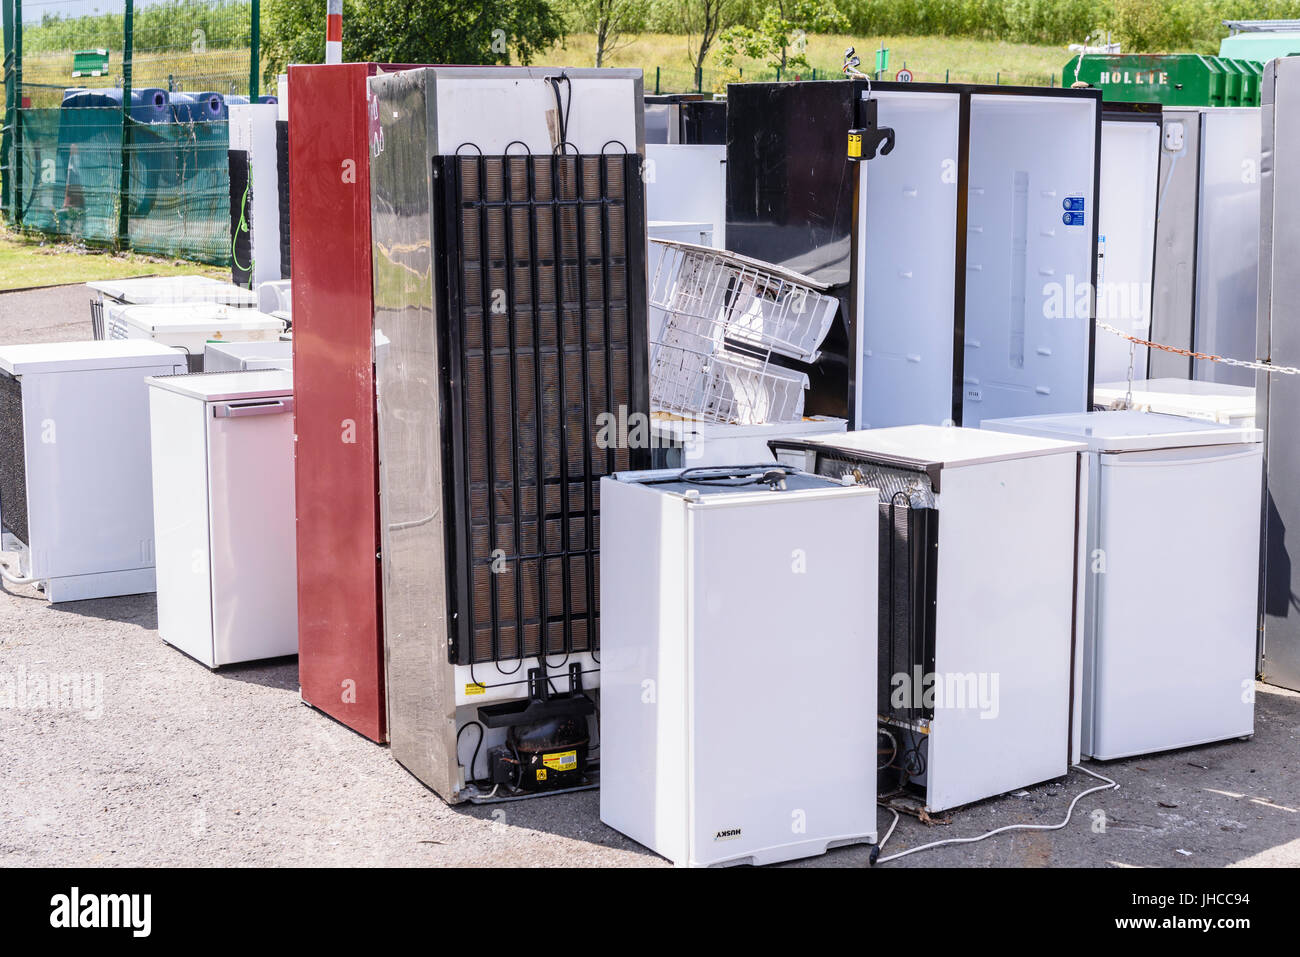 Defekte Kühlschränke an ein recycling Center, warten darauf, entsorgt und recycelt in eine umweltfreundliche Art und Weise Stockfoto